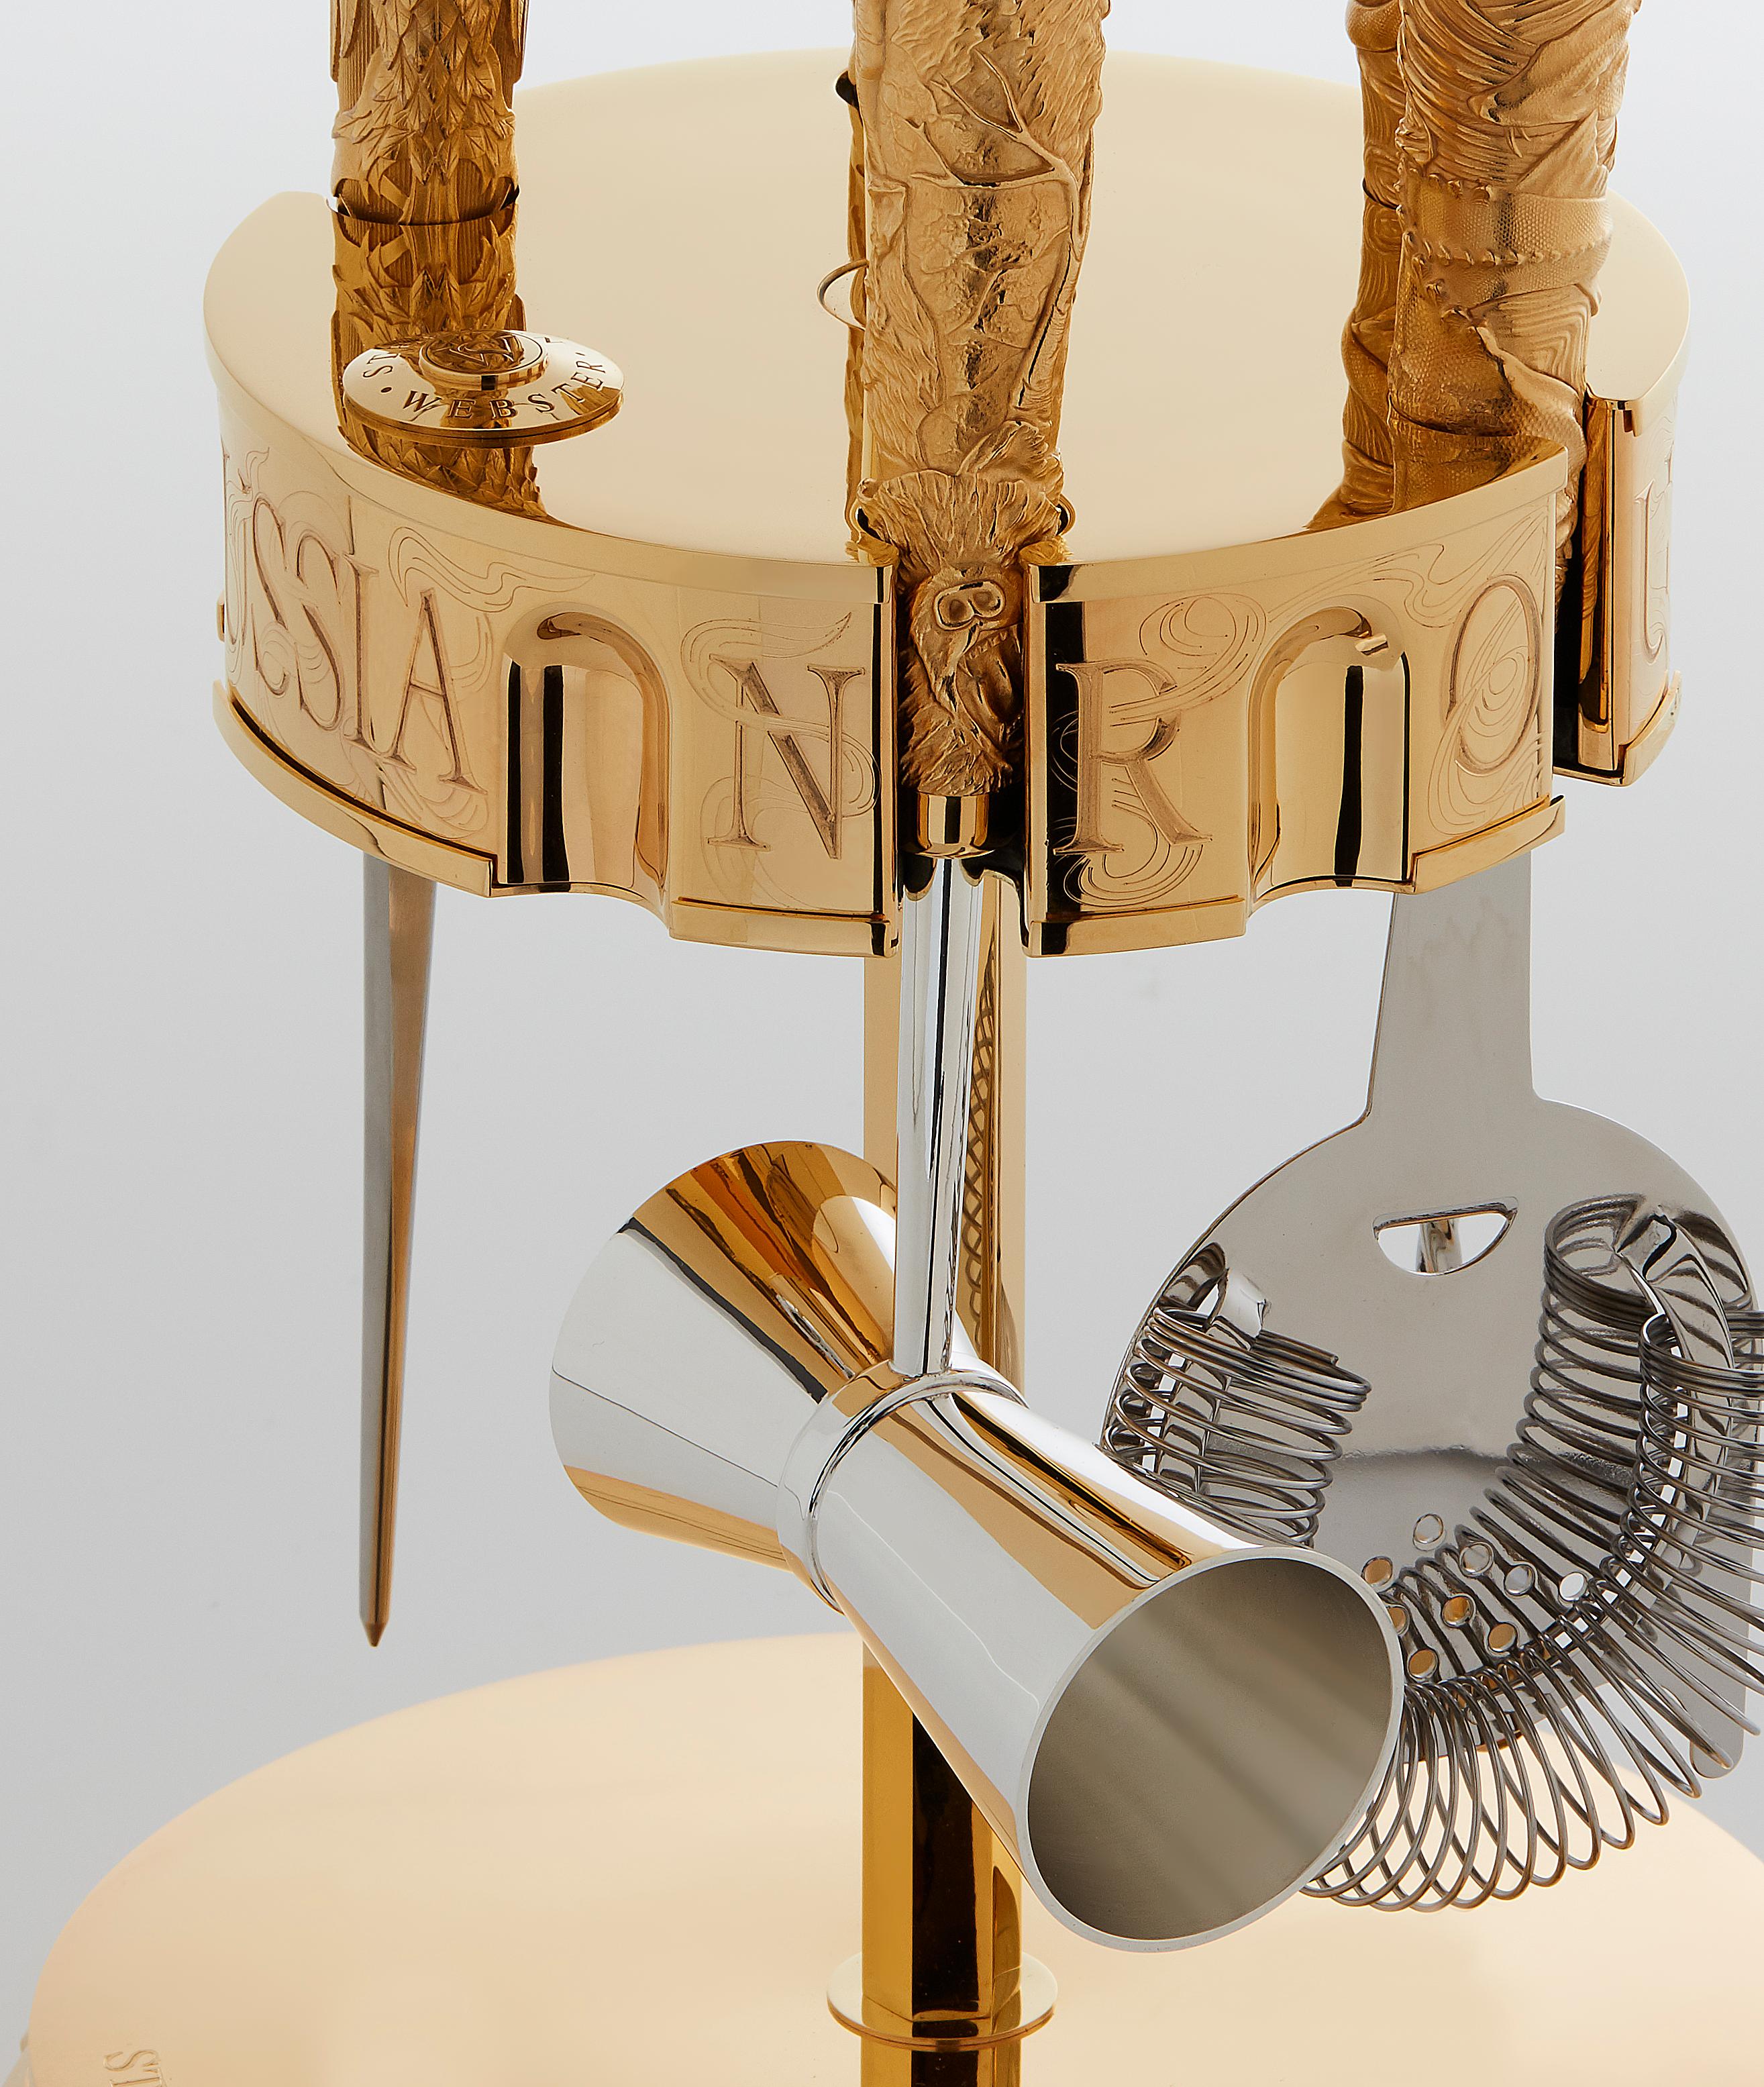 Kit d'outils rotatifs pour la roulette russe ; fabriqué en bronze et en vermeil d'or jaune 18ct, serti d'une citrine Crystal Haze.

Bronze avec vermeil en or jaune 18ct. Les outils comprennent :
- Filtre à cocktail Sturgeon Whale avec Crystal Haze